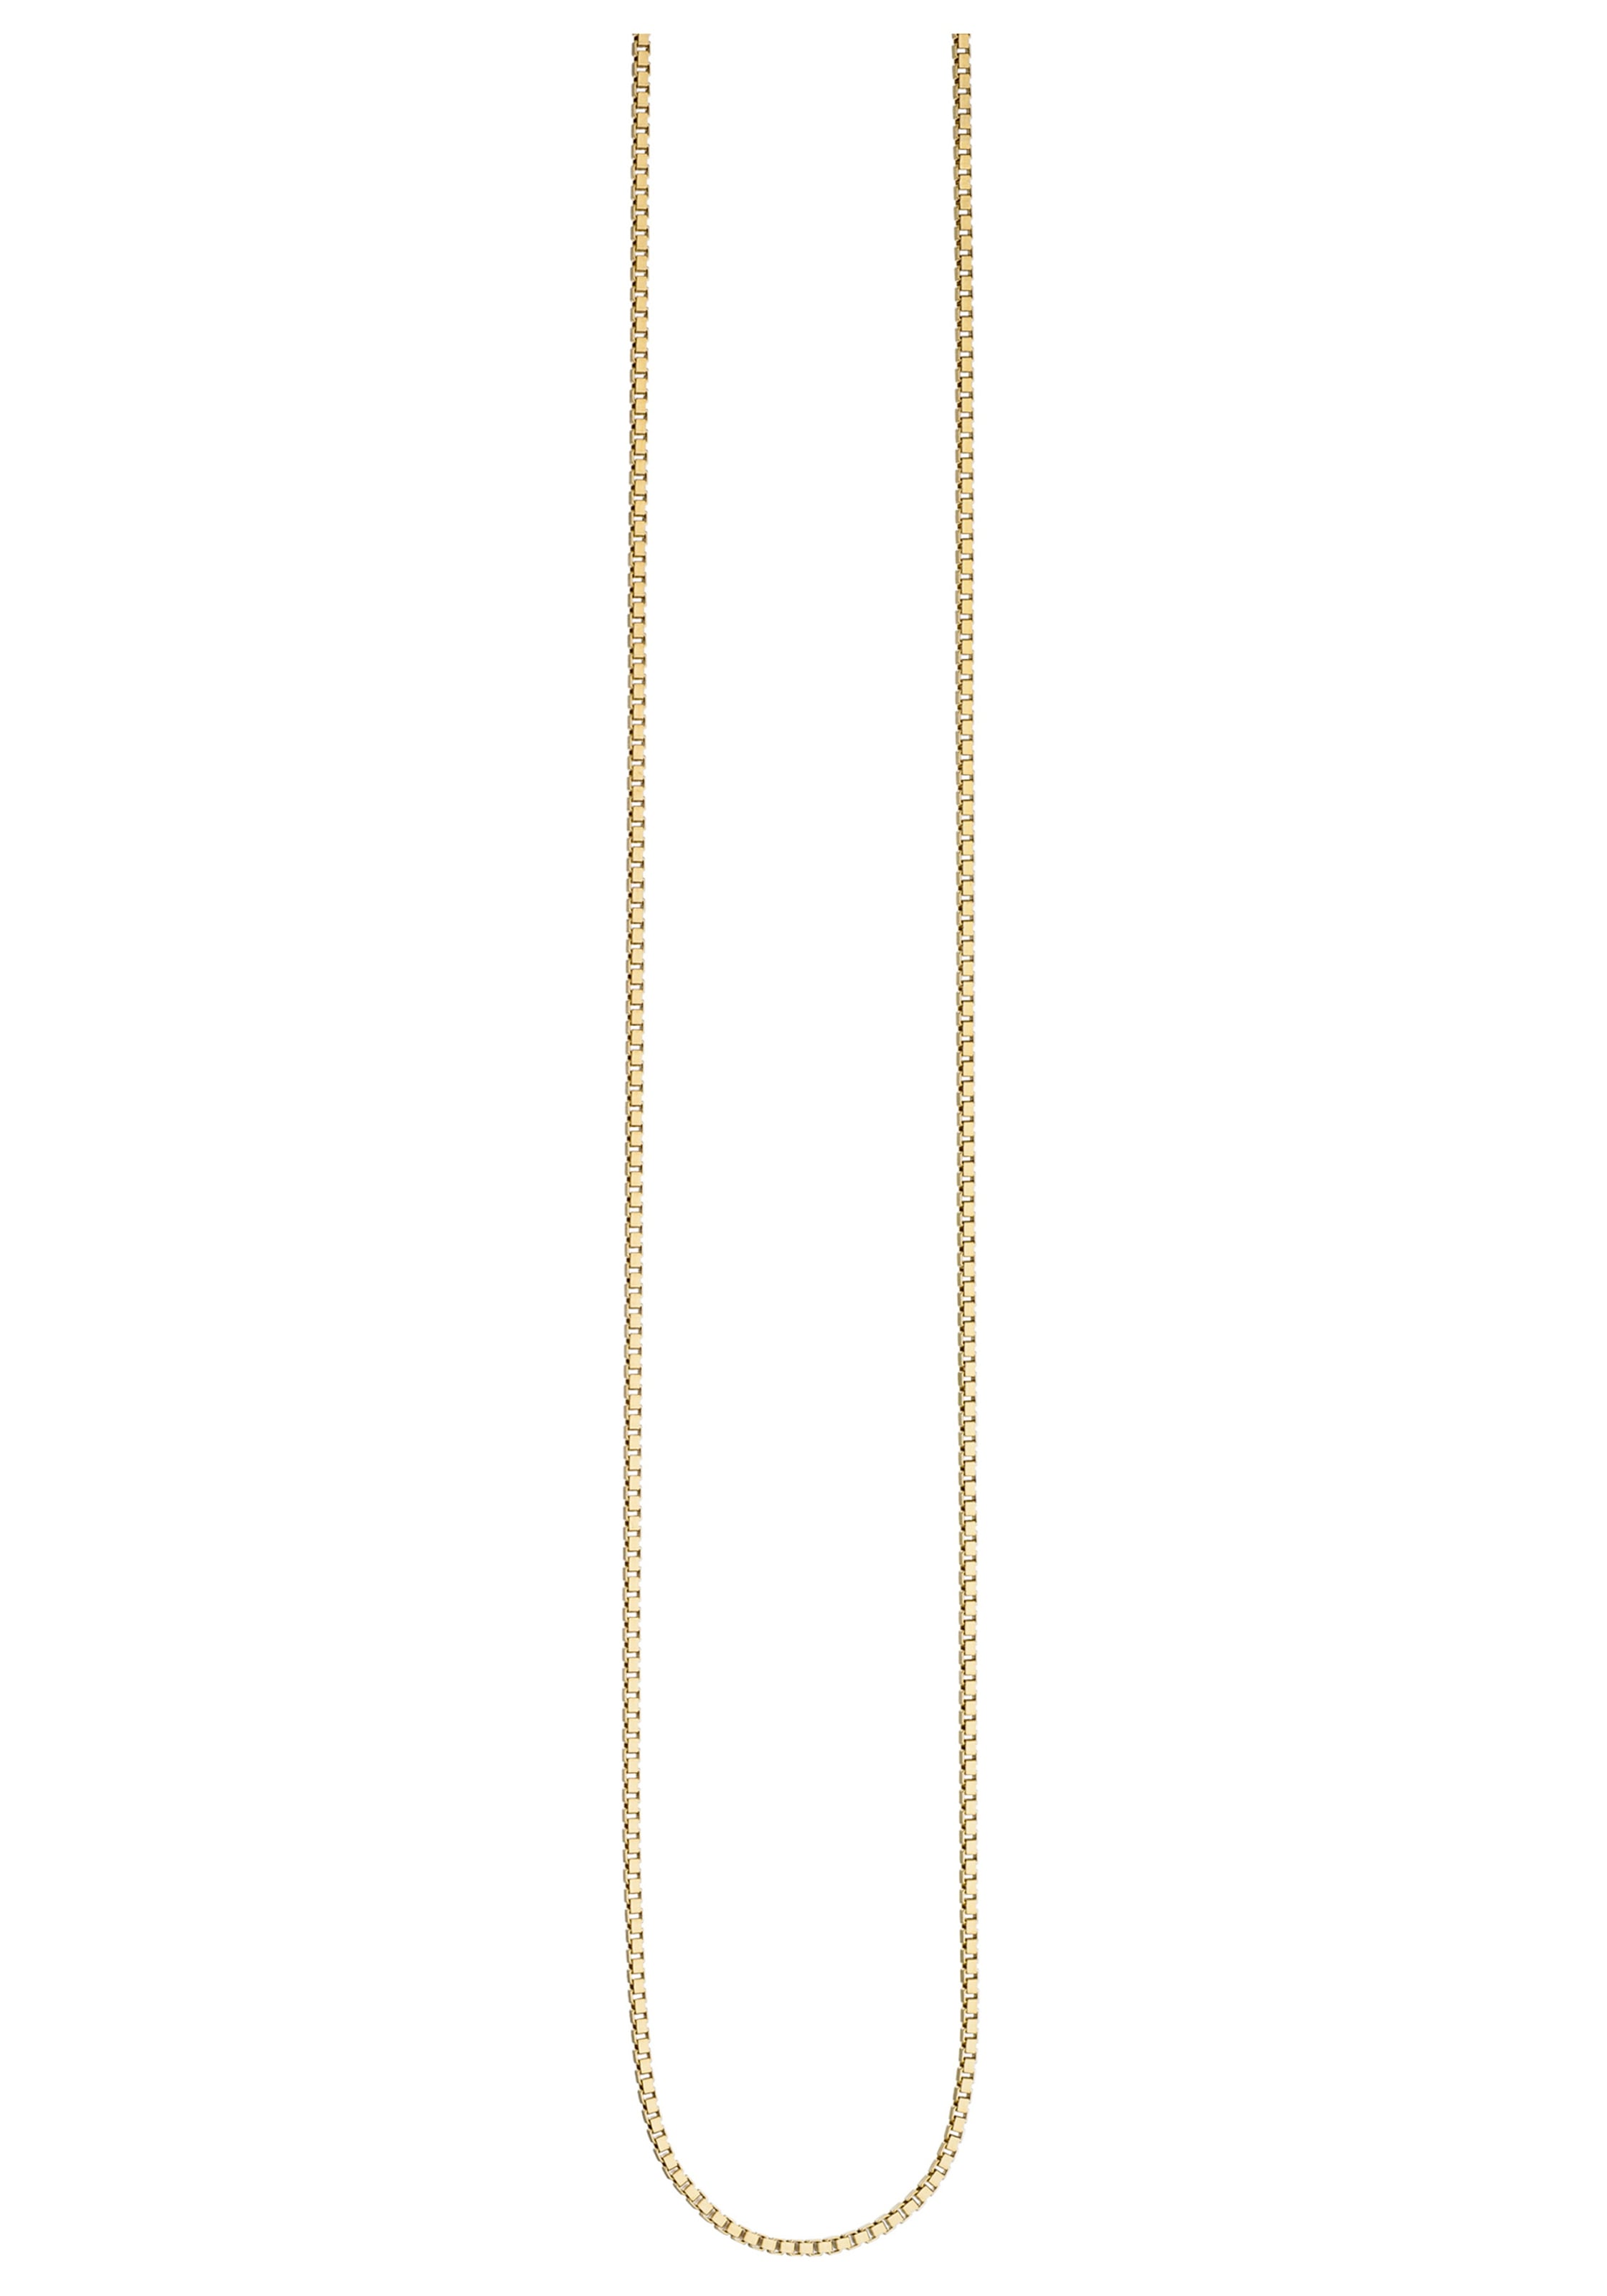 JOBO Kette ohne Anhänger, Venezianerkette 925 Silber vergoldet 50 cm 1,3 mm